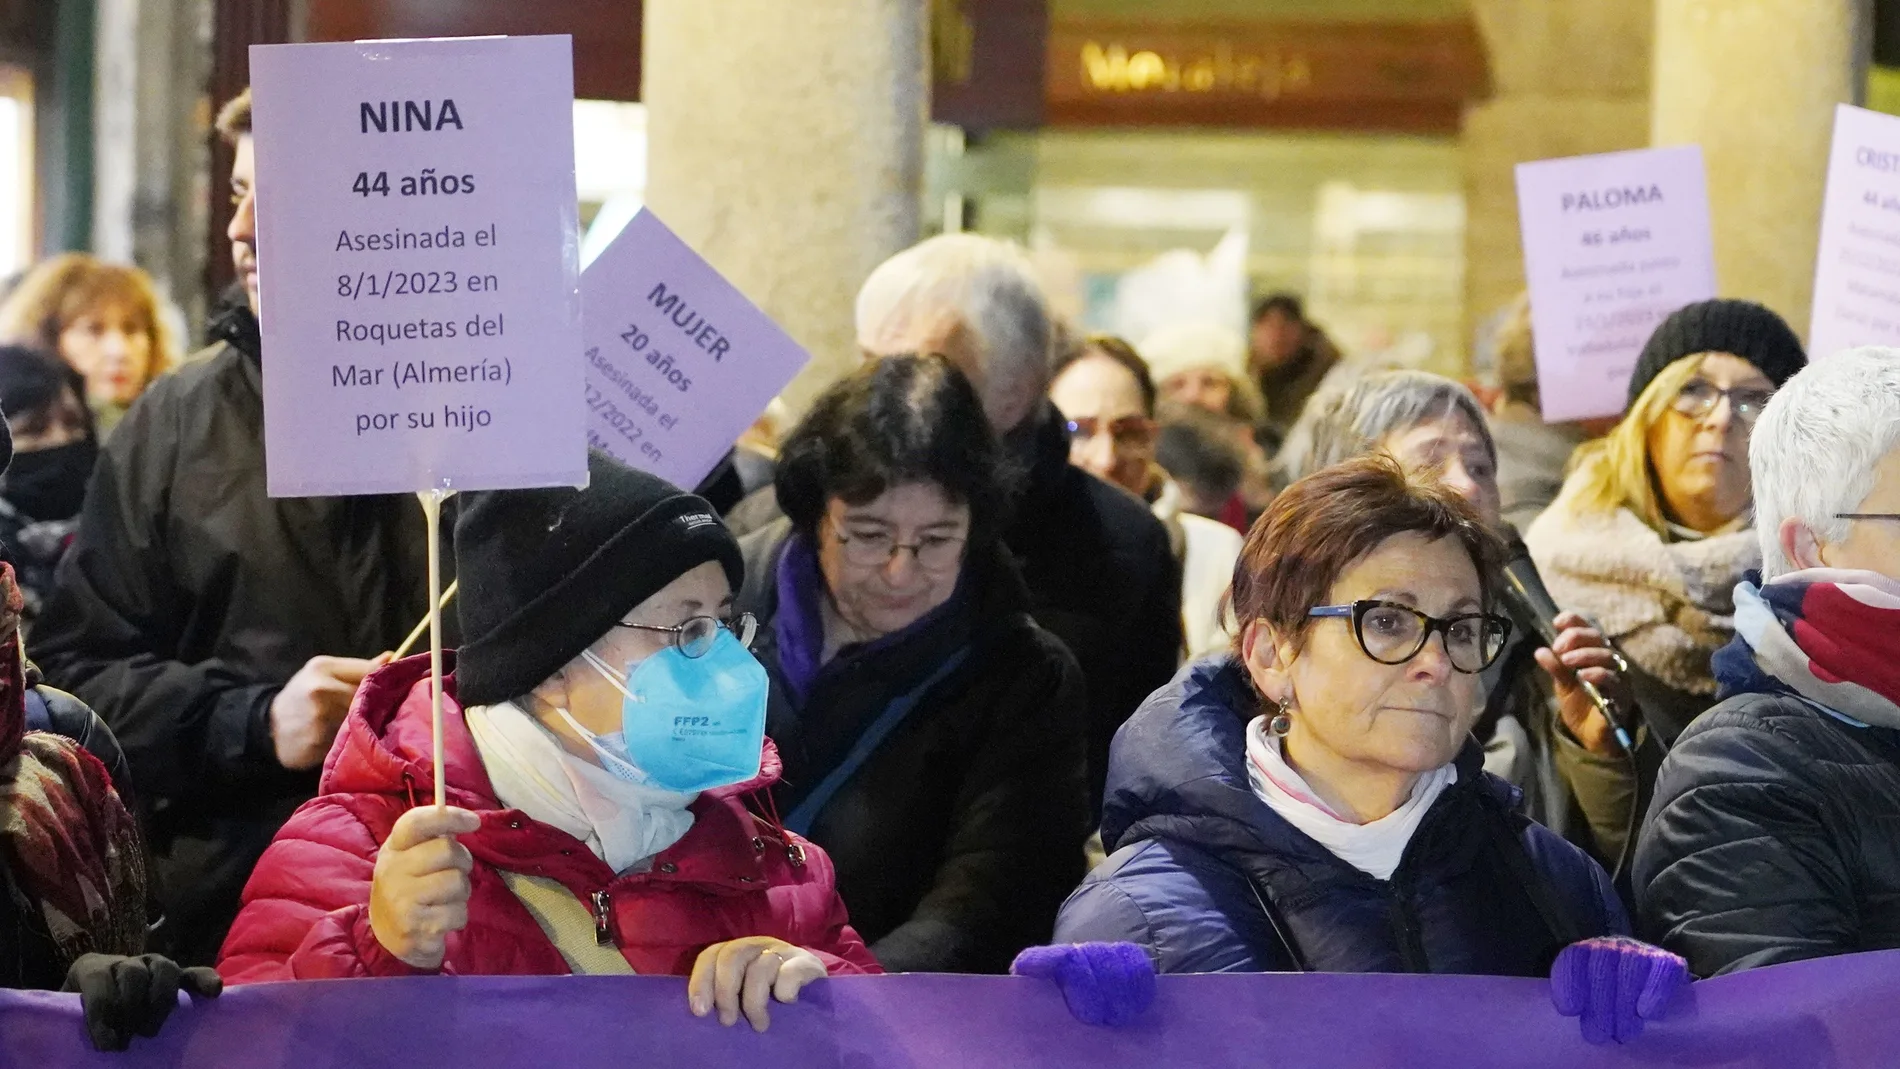 Manifestación en Valladolid contra de la violencia machista